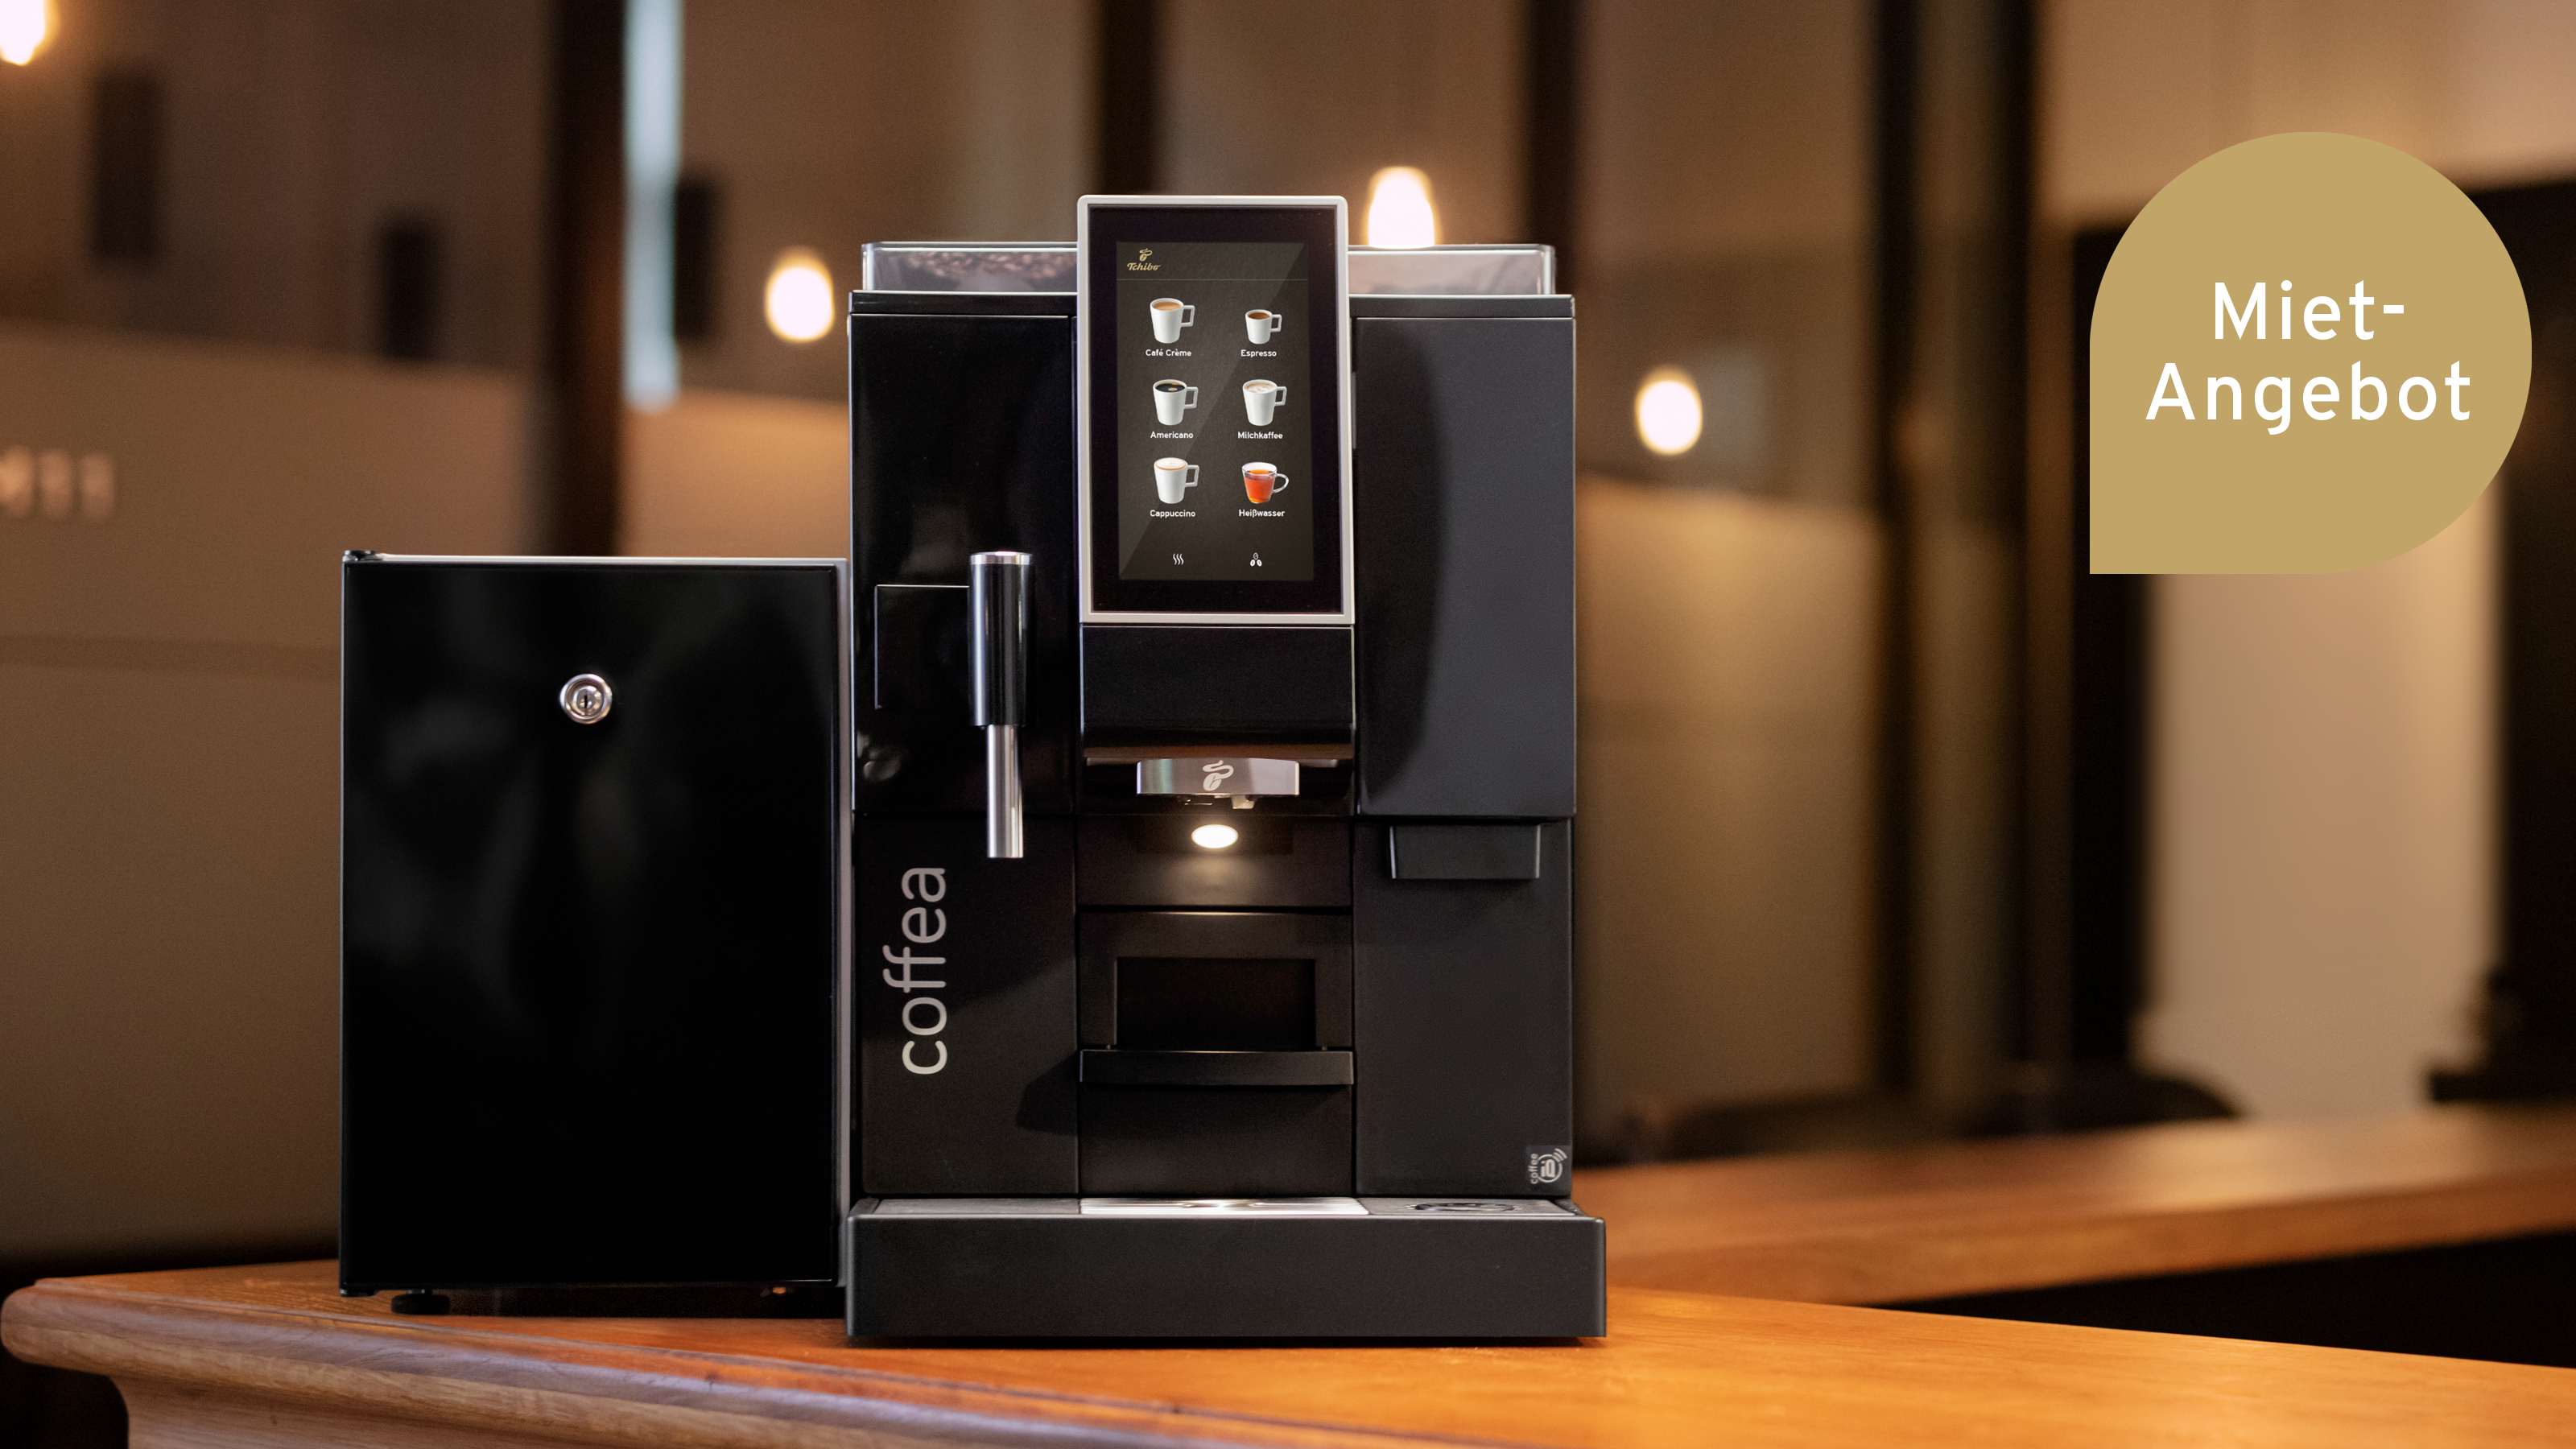 Mietangebot zu Coffea Delight Kaffeevollautomat